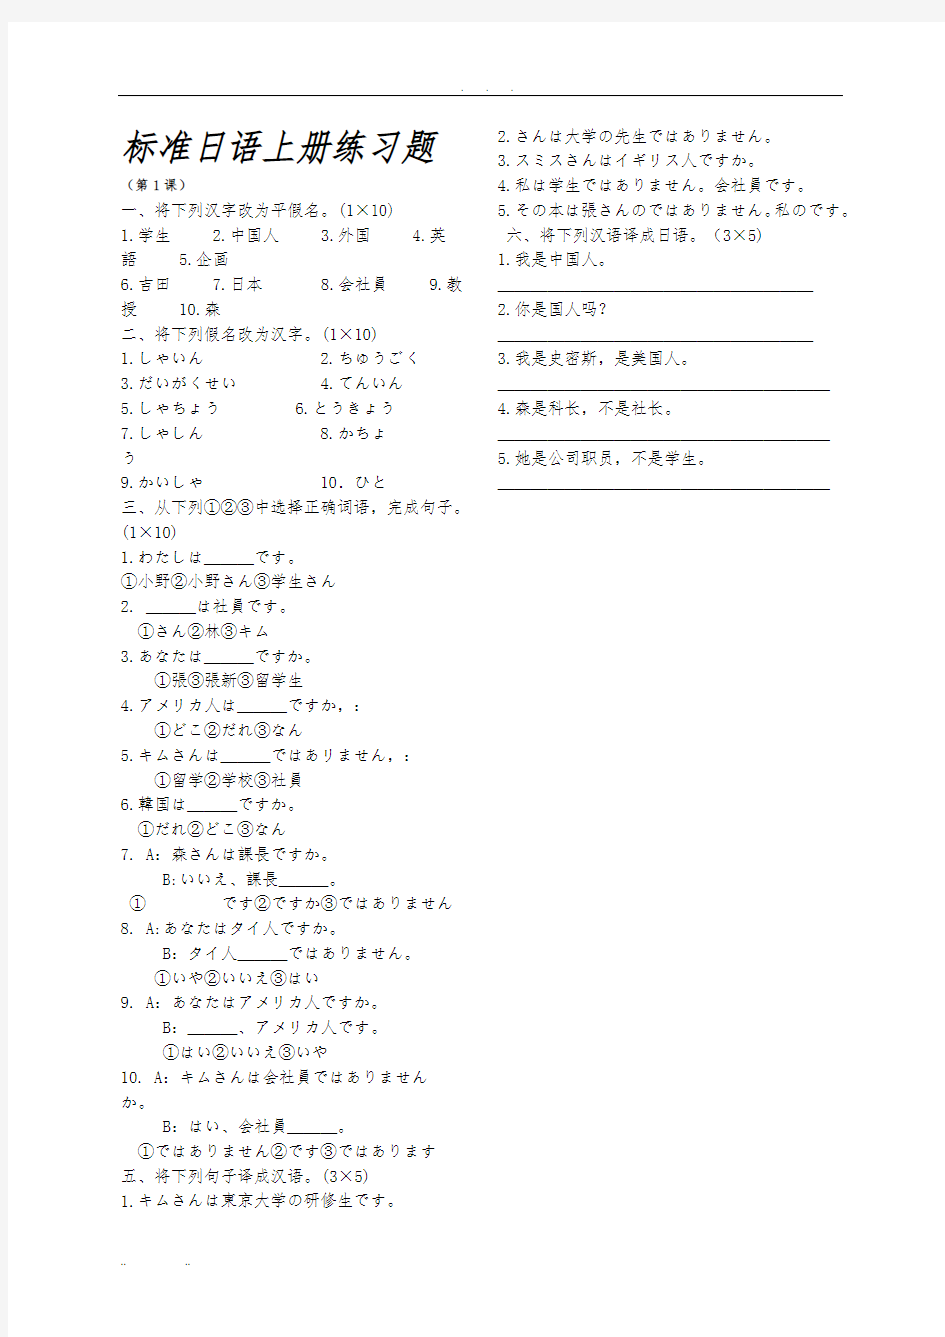 标准日语初级(上册)练习题与答案(A4打印版)